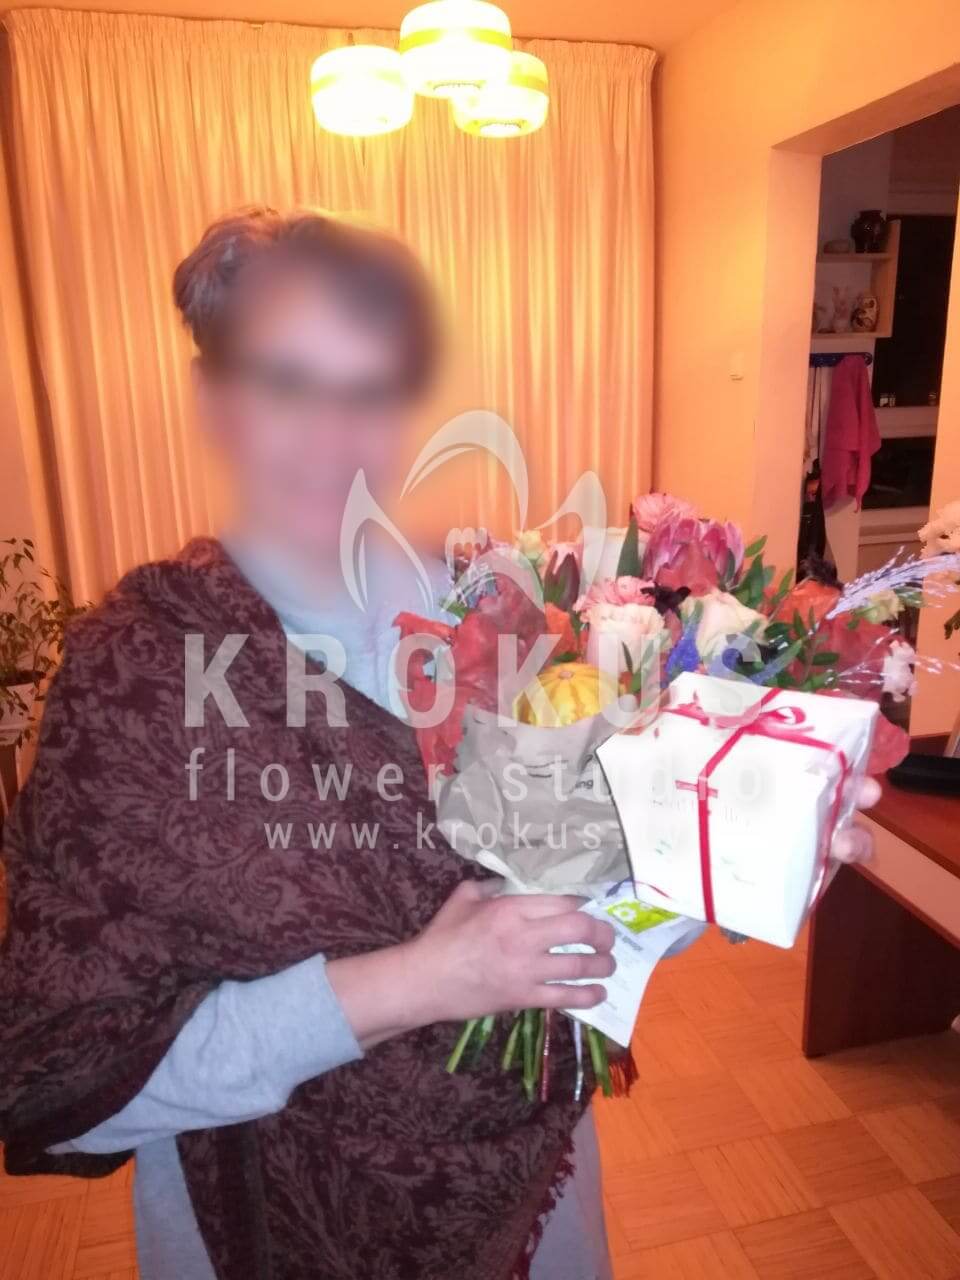 Доставка цветов в город Рига (кустовые розыдекортыквалеукоспермумгиперикумлизиантусы (эустома))